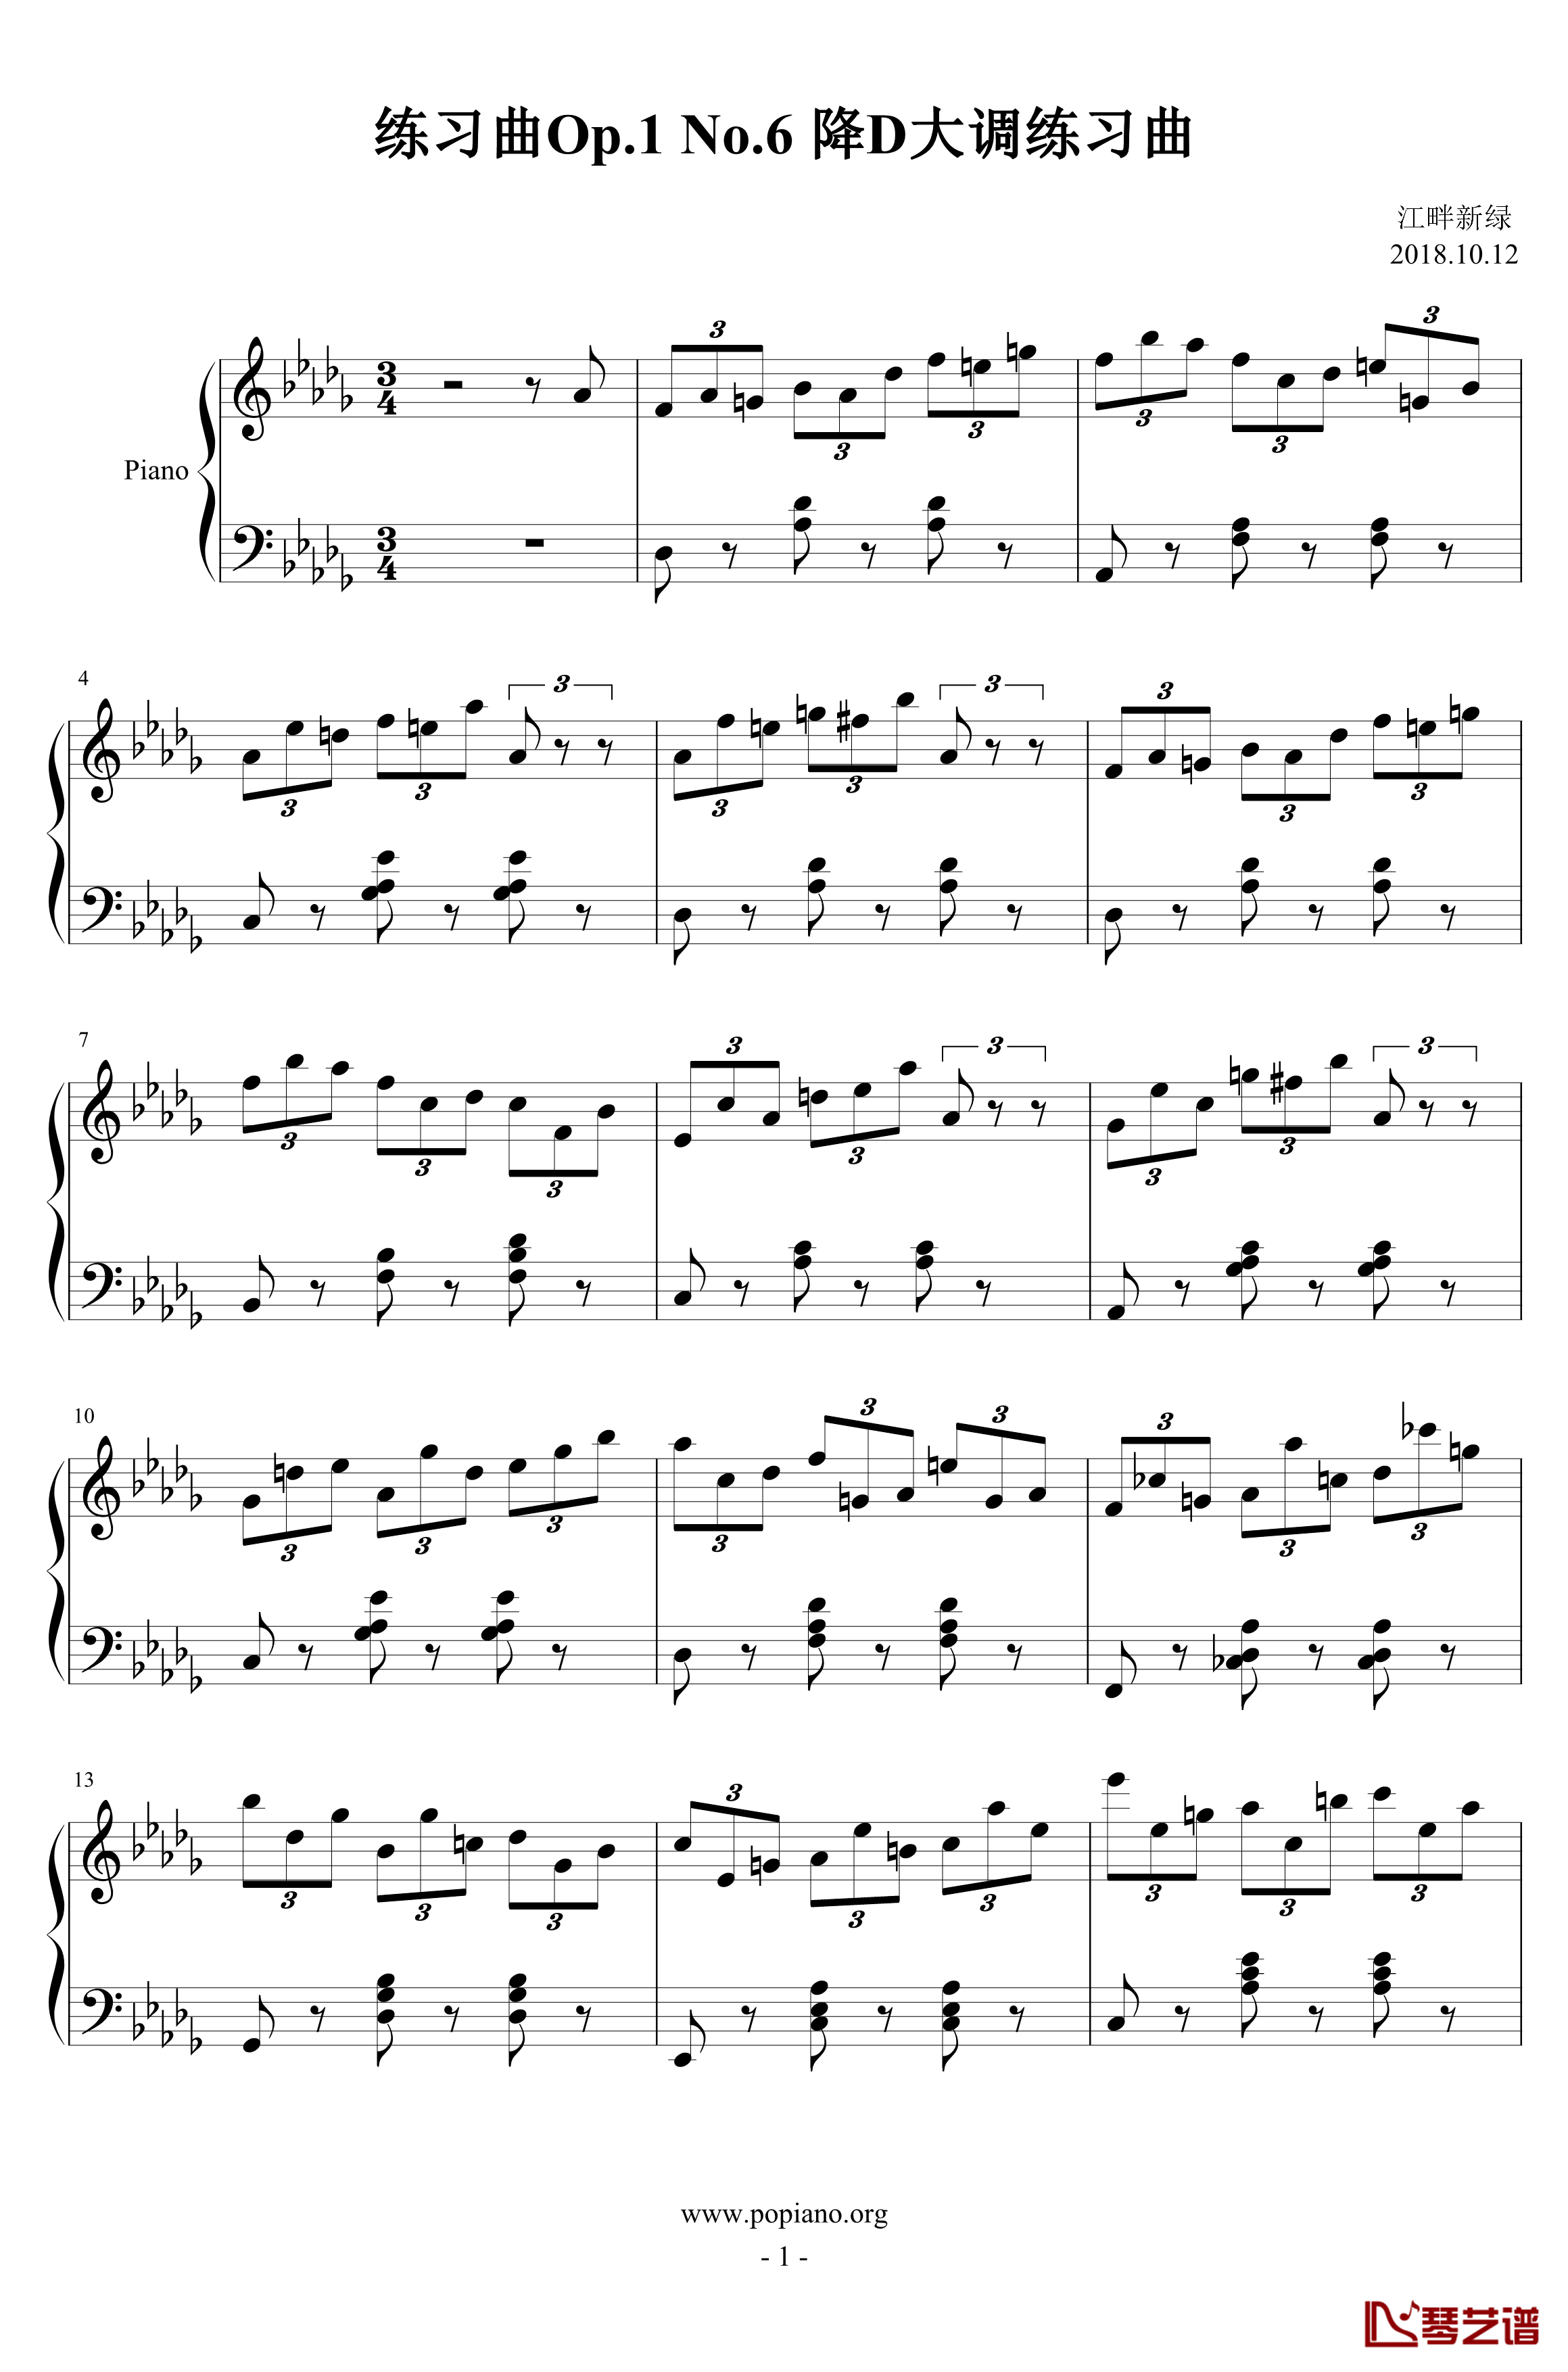 练习曲No.1 Op.6 降D大调练习曲钢琴谱-江畔新绿1